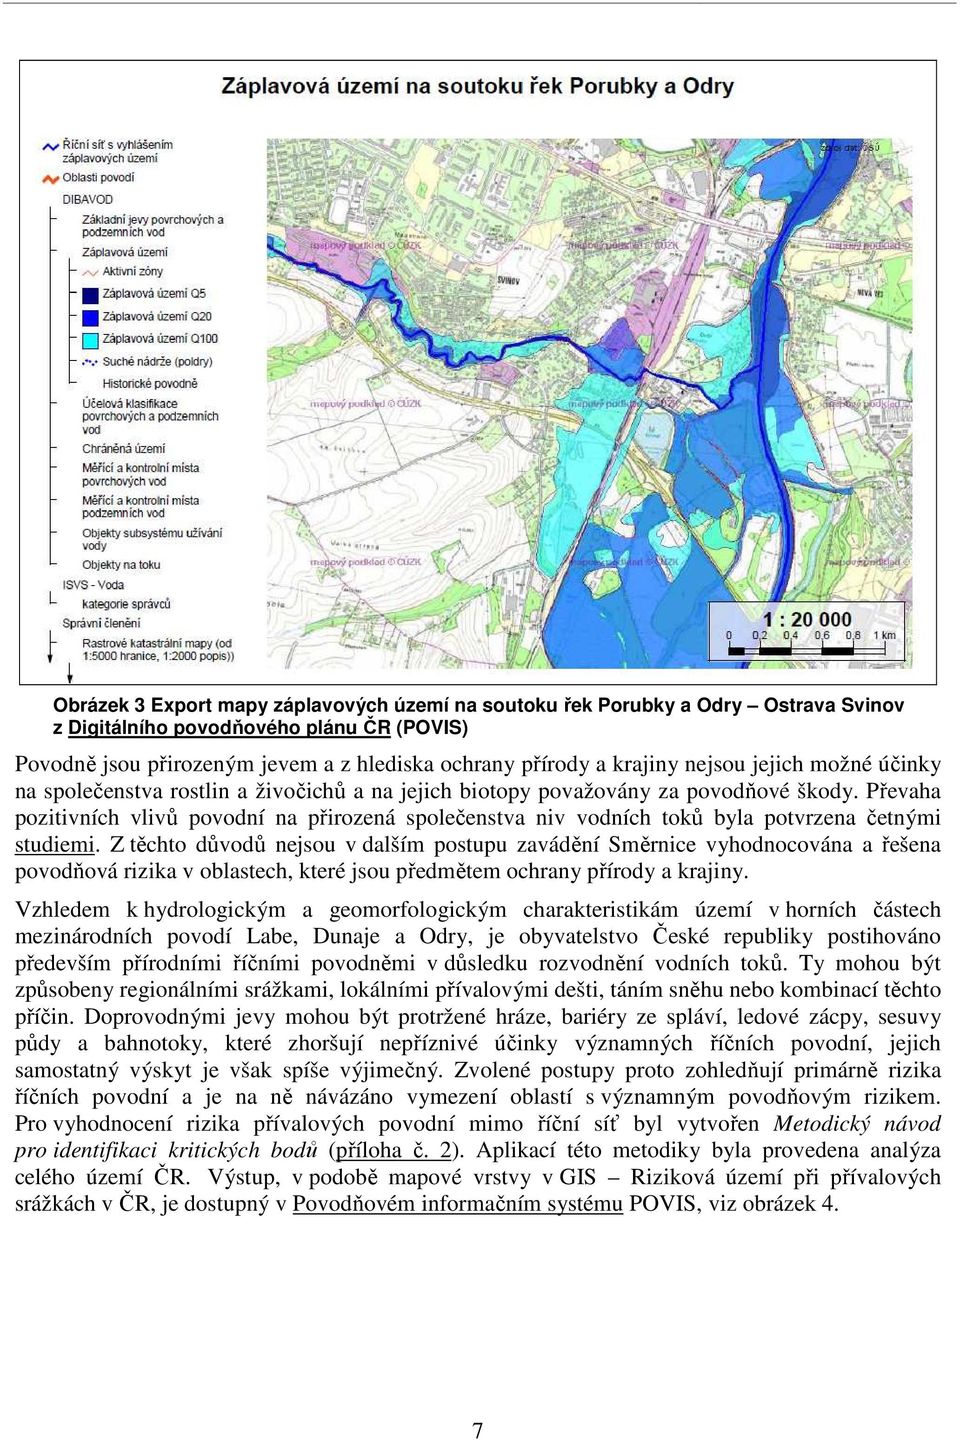 Převaha pozitivních vlivů povodní na přirozená společenstva niv vodních toků byla potvrzena četnými studiemi.